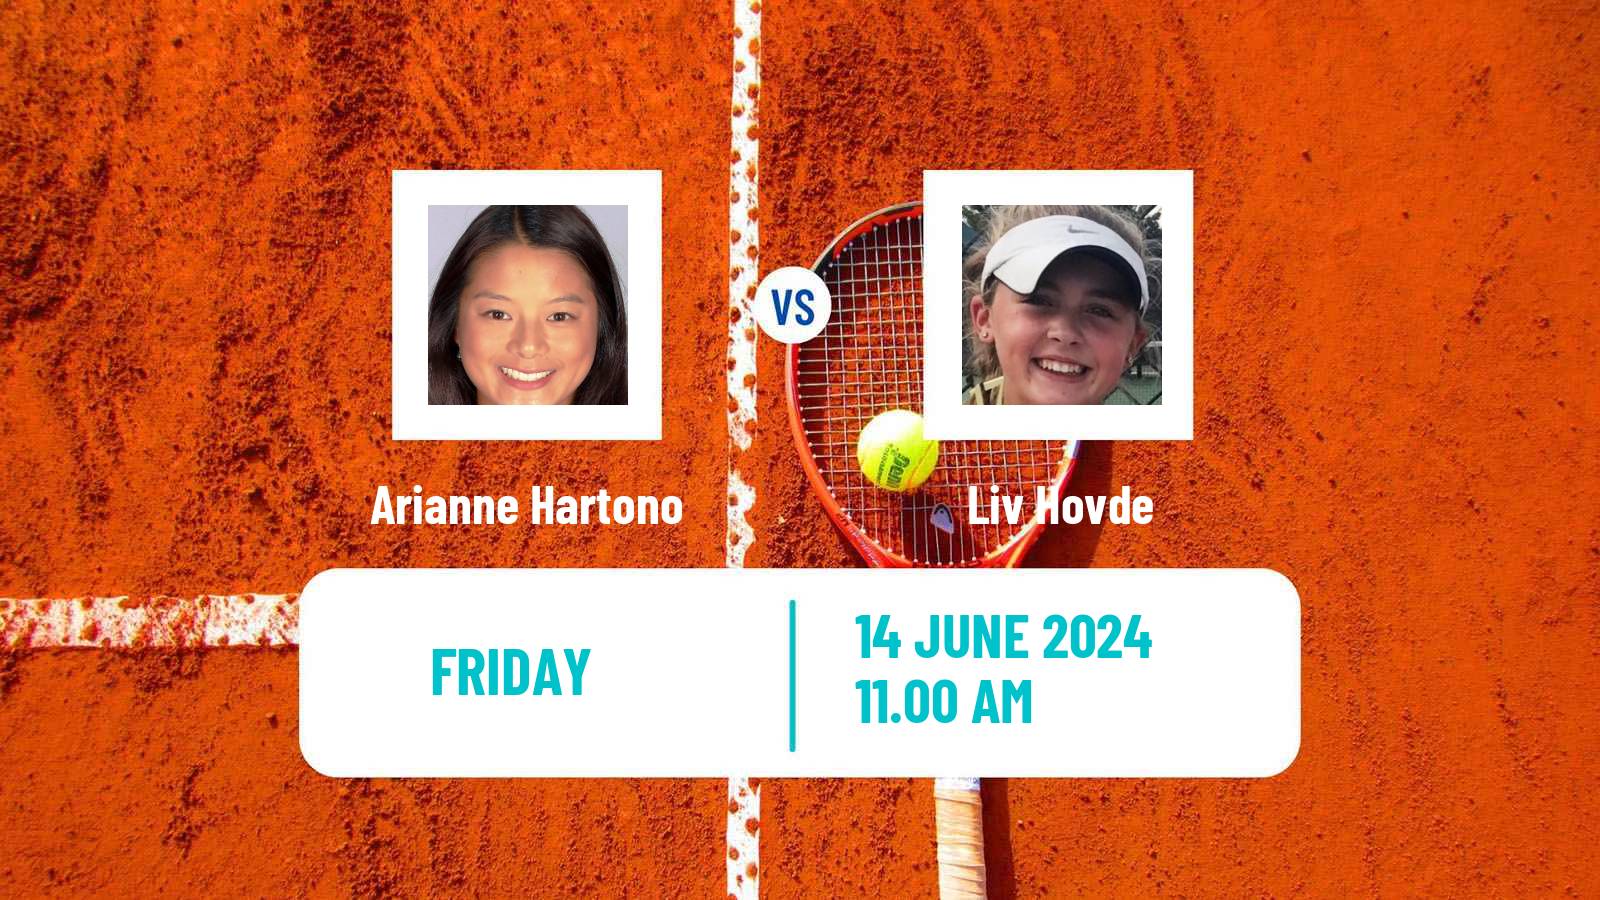 Tennis ITF W75 Guimaraes Women Arianne Hartono - Liv Hovde